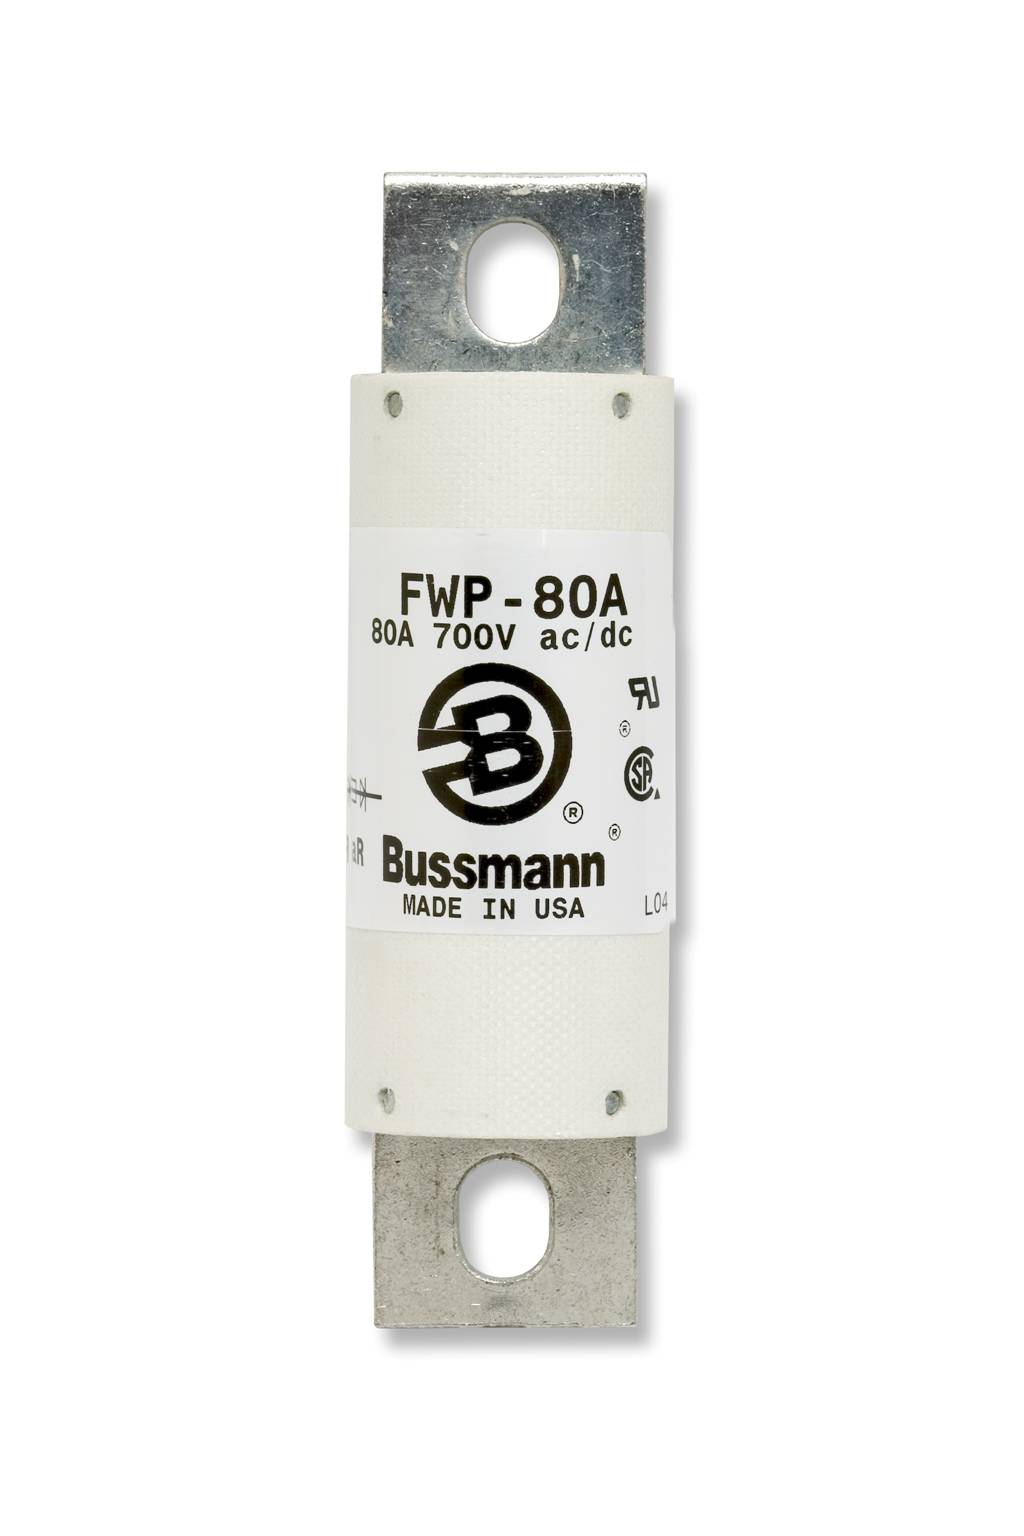 Part # FWP-100B  Manufacturer BUSSMANN  Product Type 700 Volt Fuse